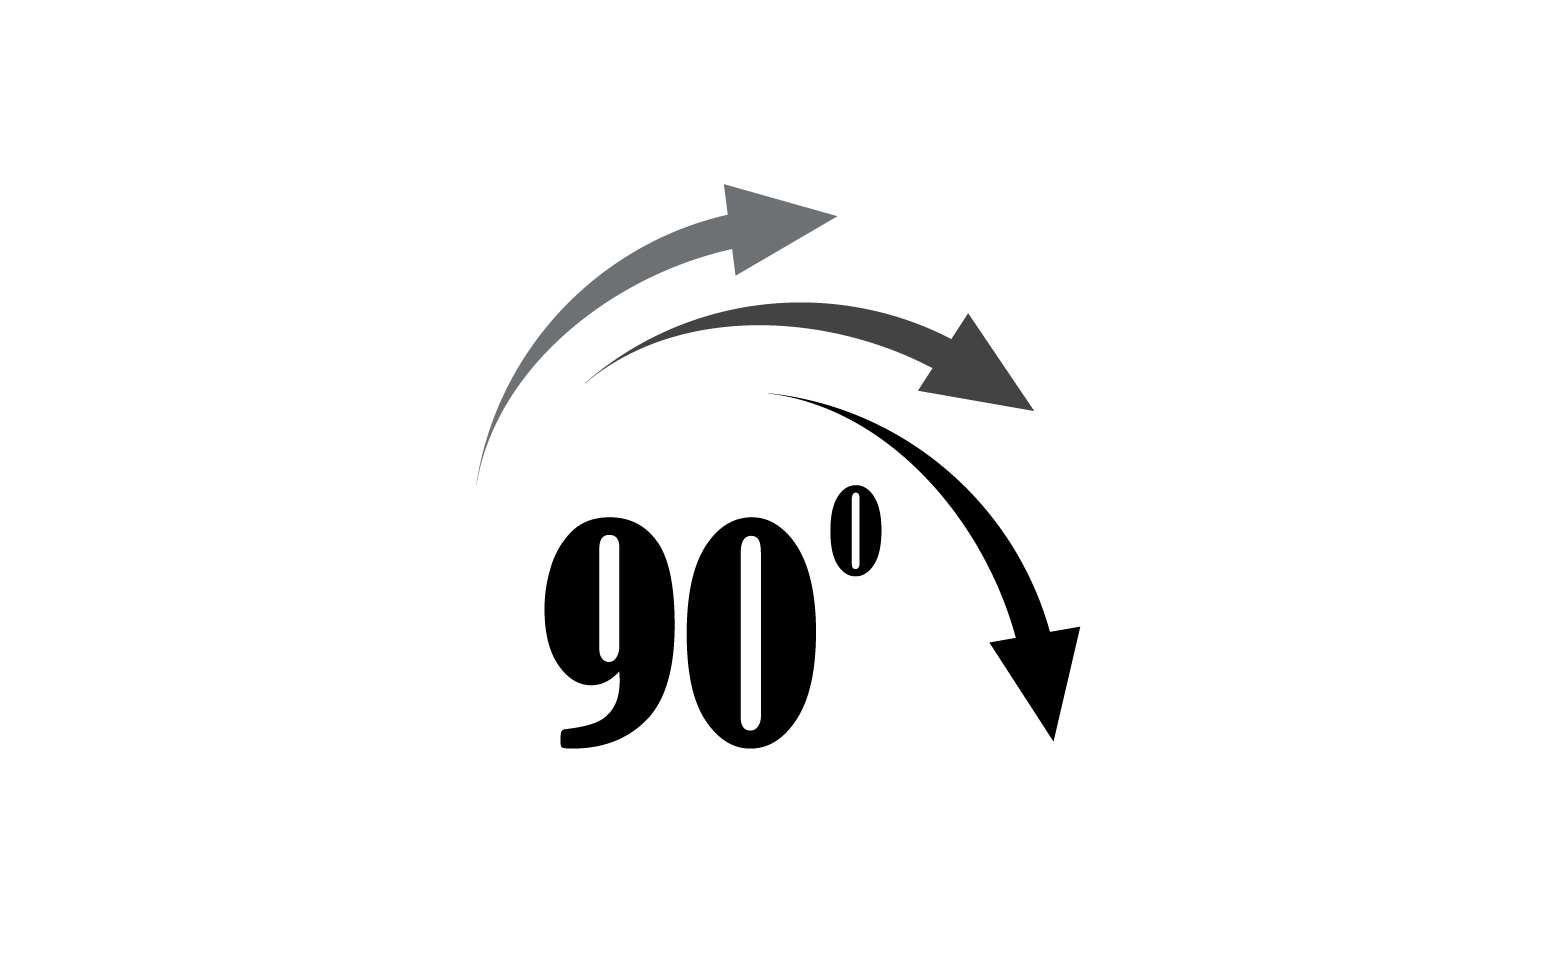 90 degree angle rotation icon symbol logo v45